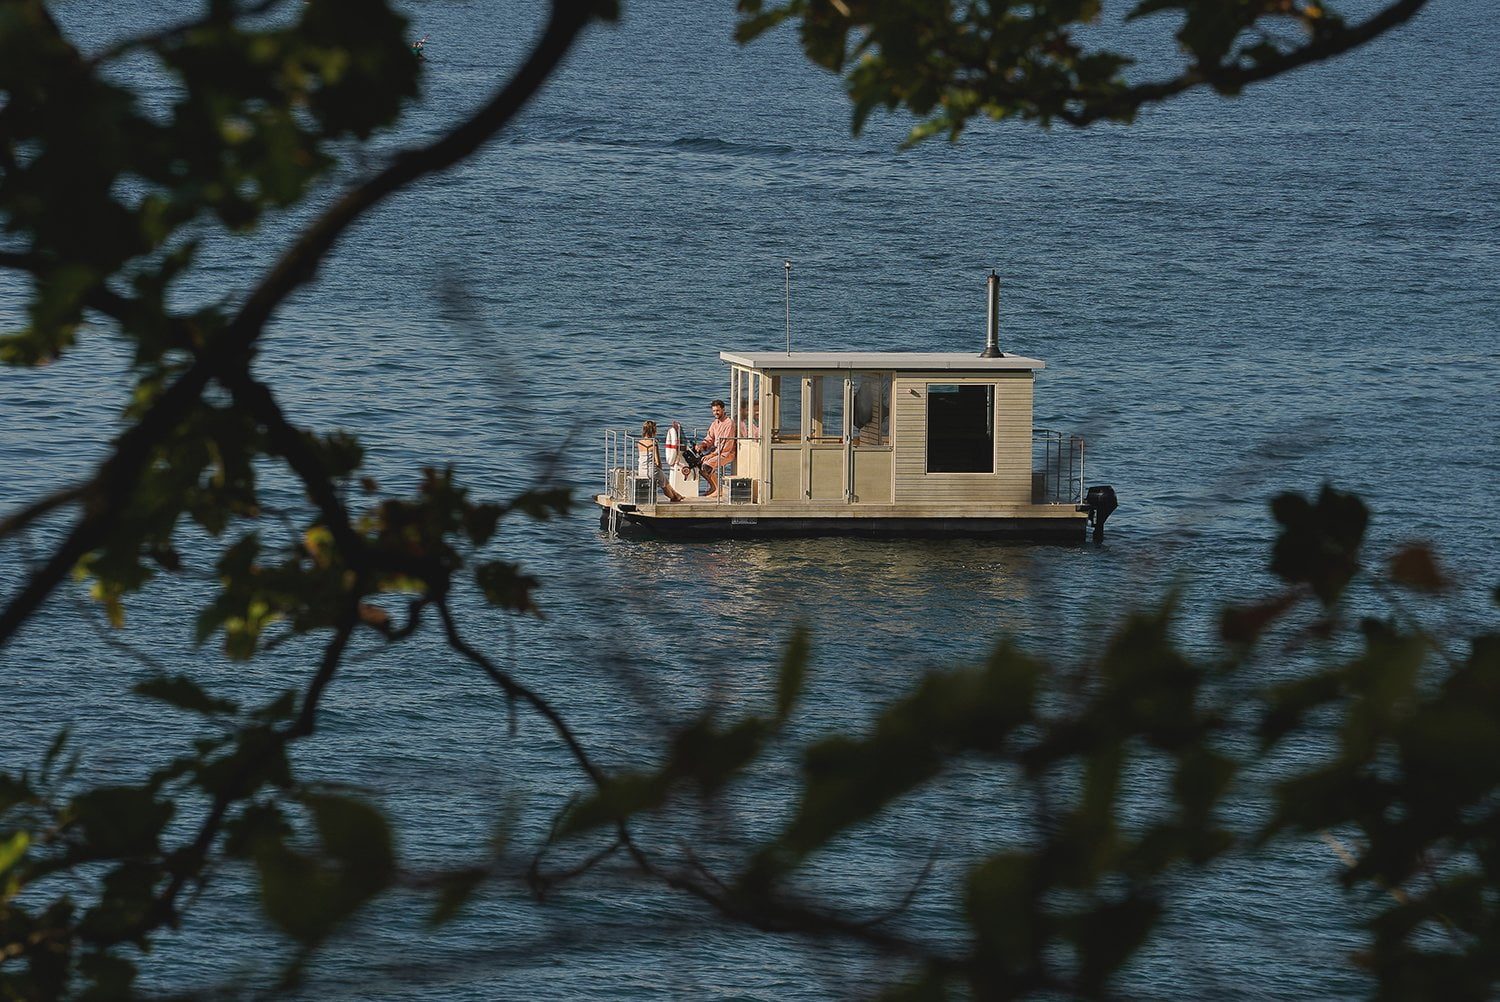 Aussensauna mal anders: Das Saunaboot auf dem Vierwaldstätter See in der Schweiz